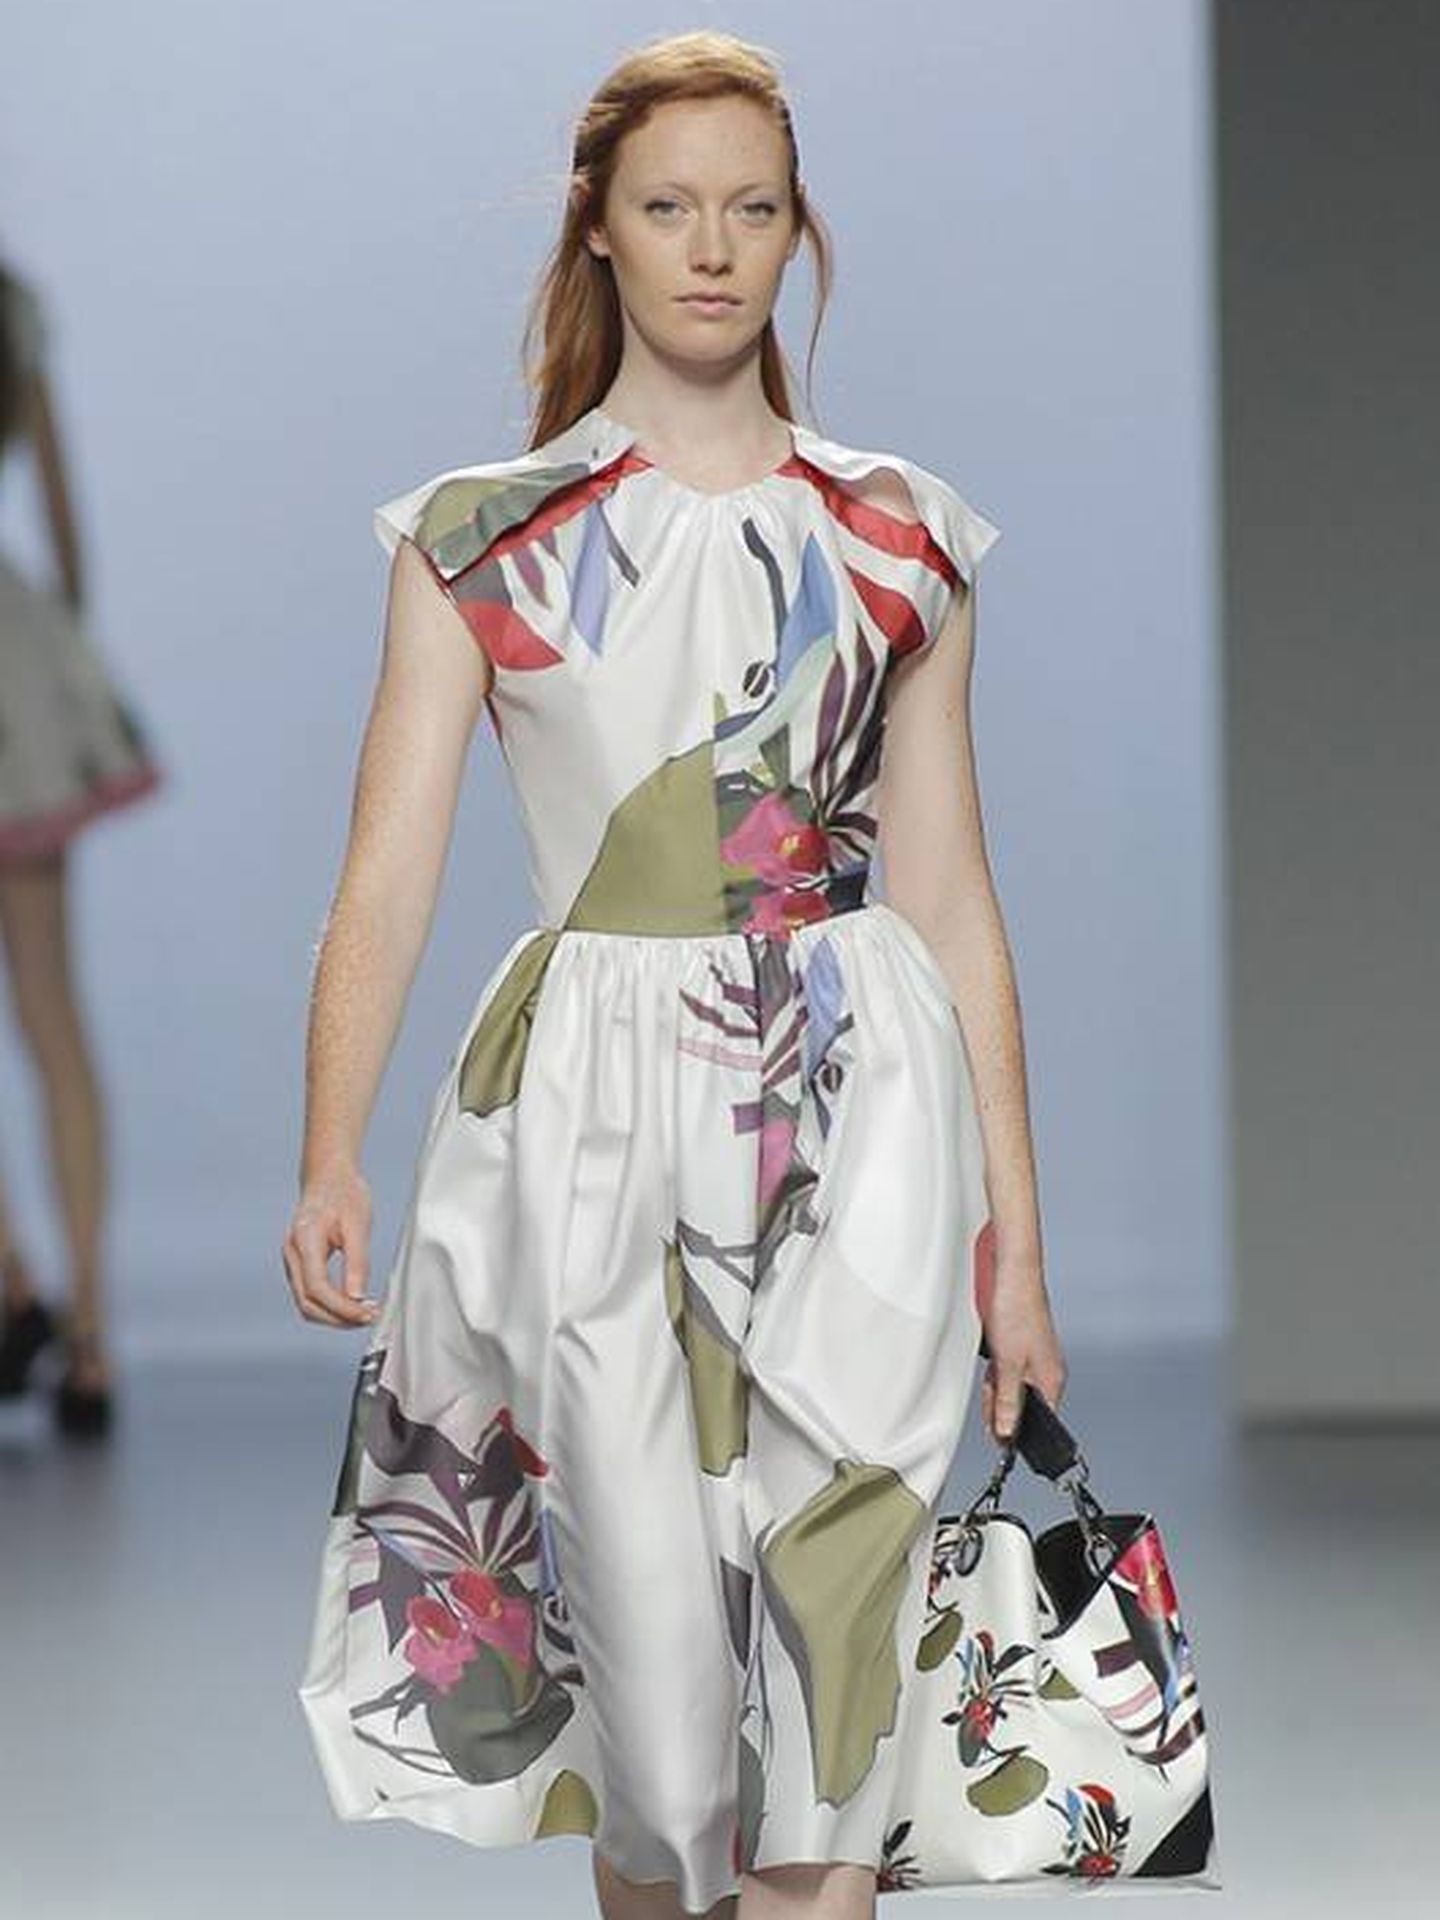 El vestido forma parte de la colección Primavera-Verano 2016 (Juanvidalshop.com)